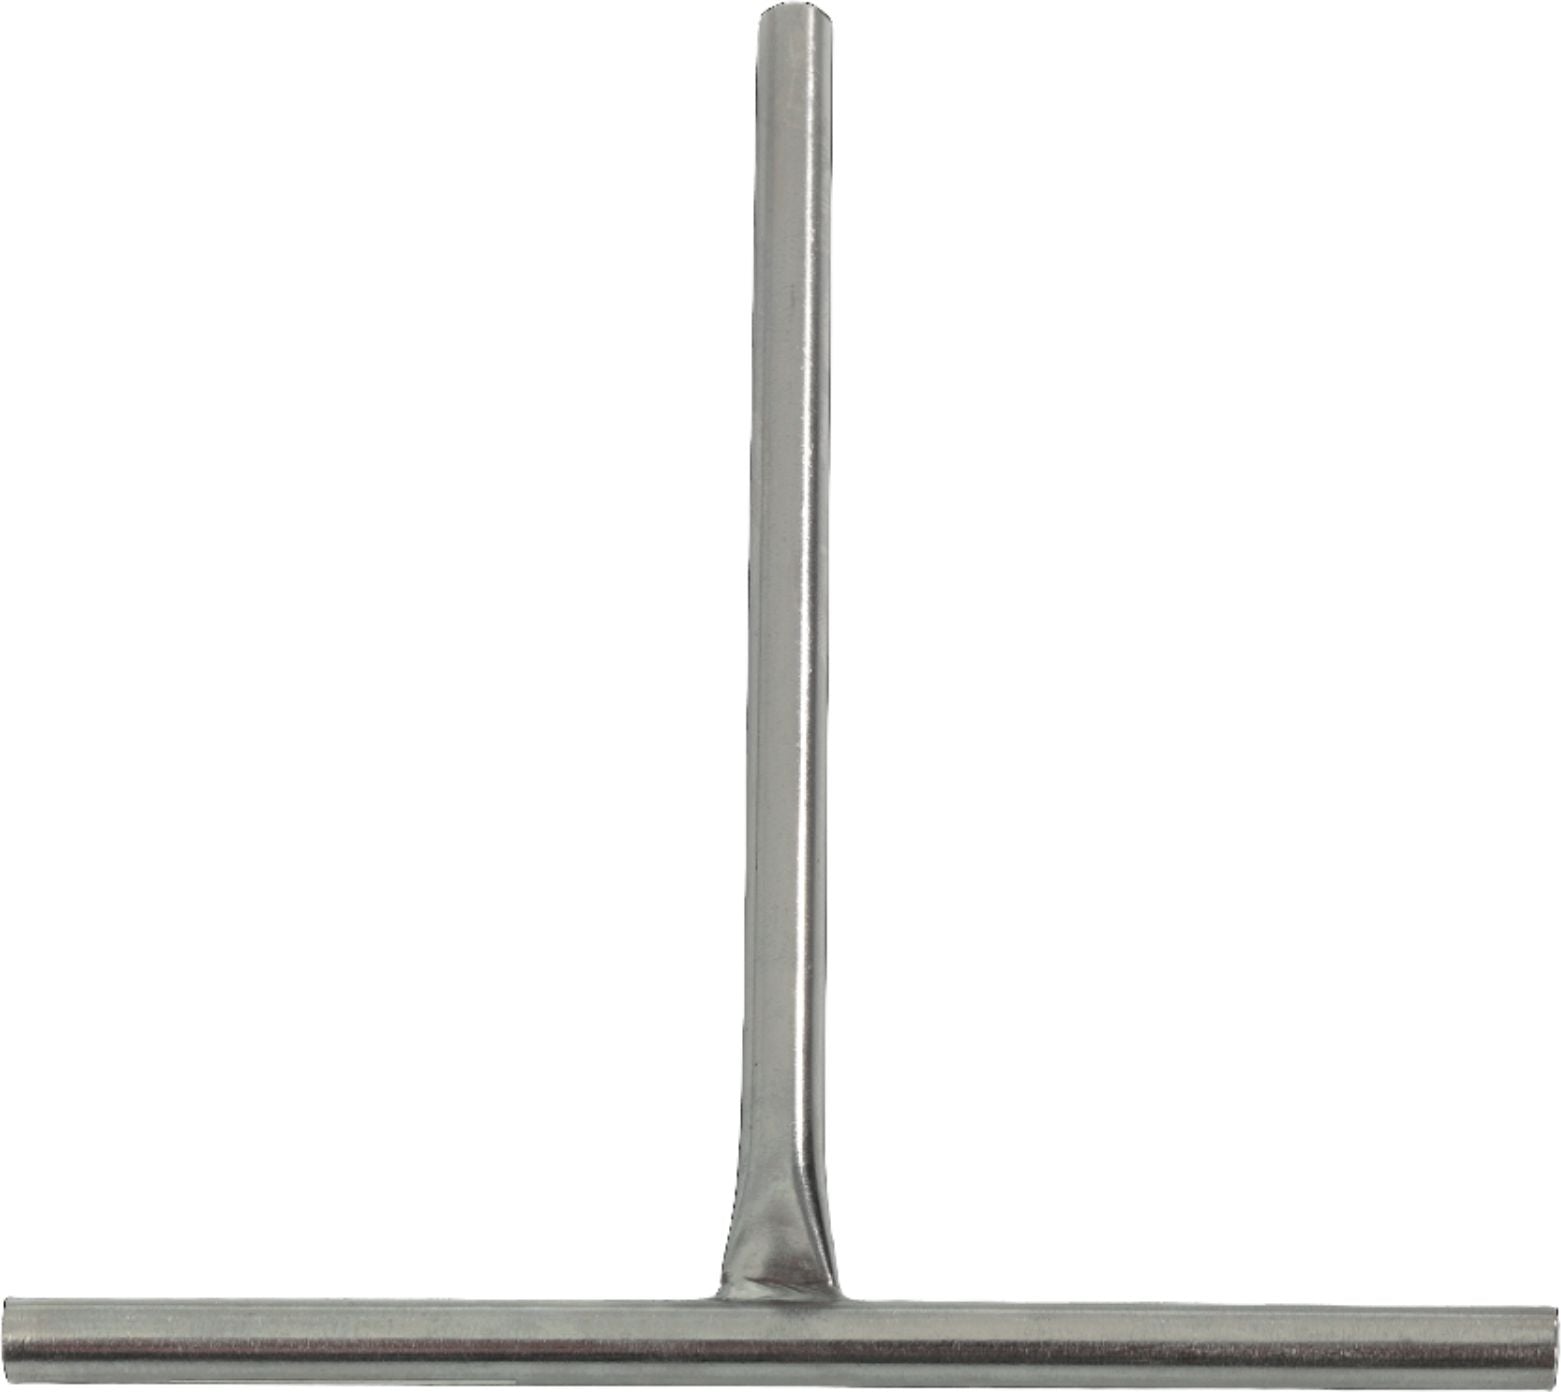 KRAMPOUZ - 18 cm Stainless Steel Round Crepe Spreader - ARI18